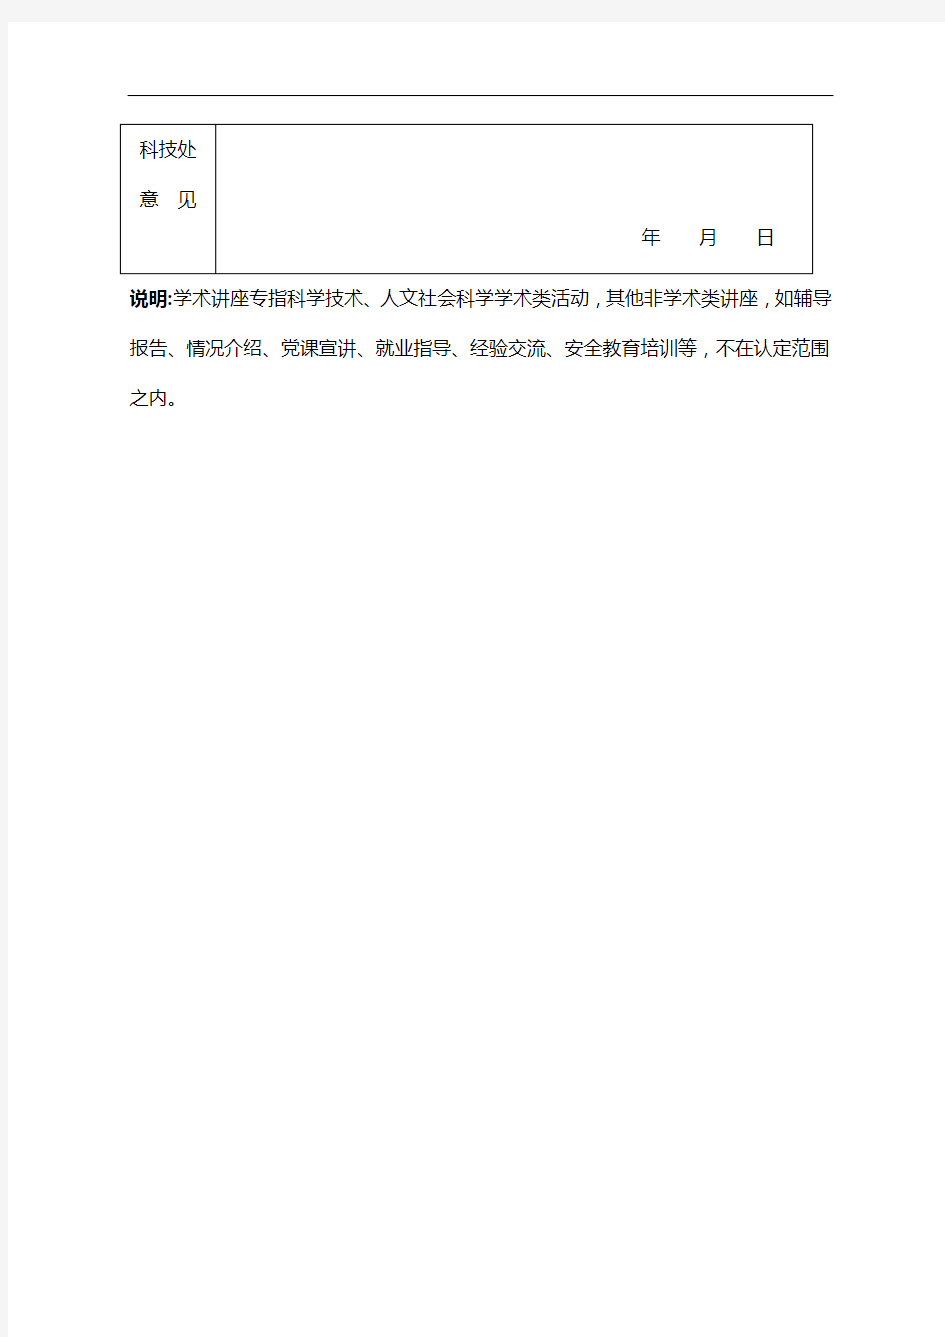 扬州工业职业技术学院学术讲座申请表